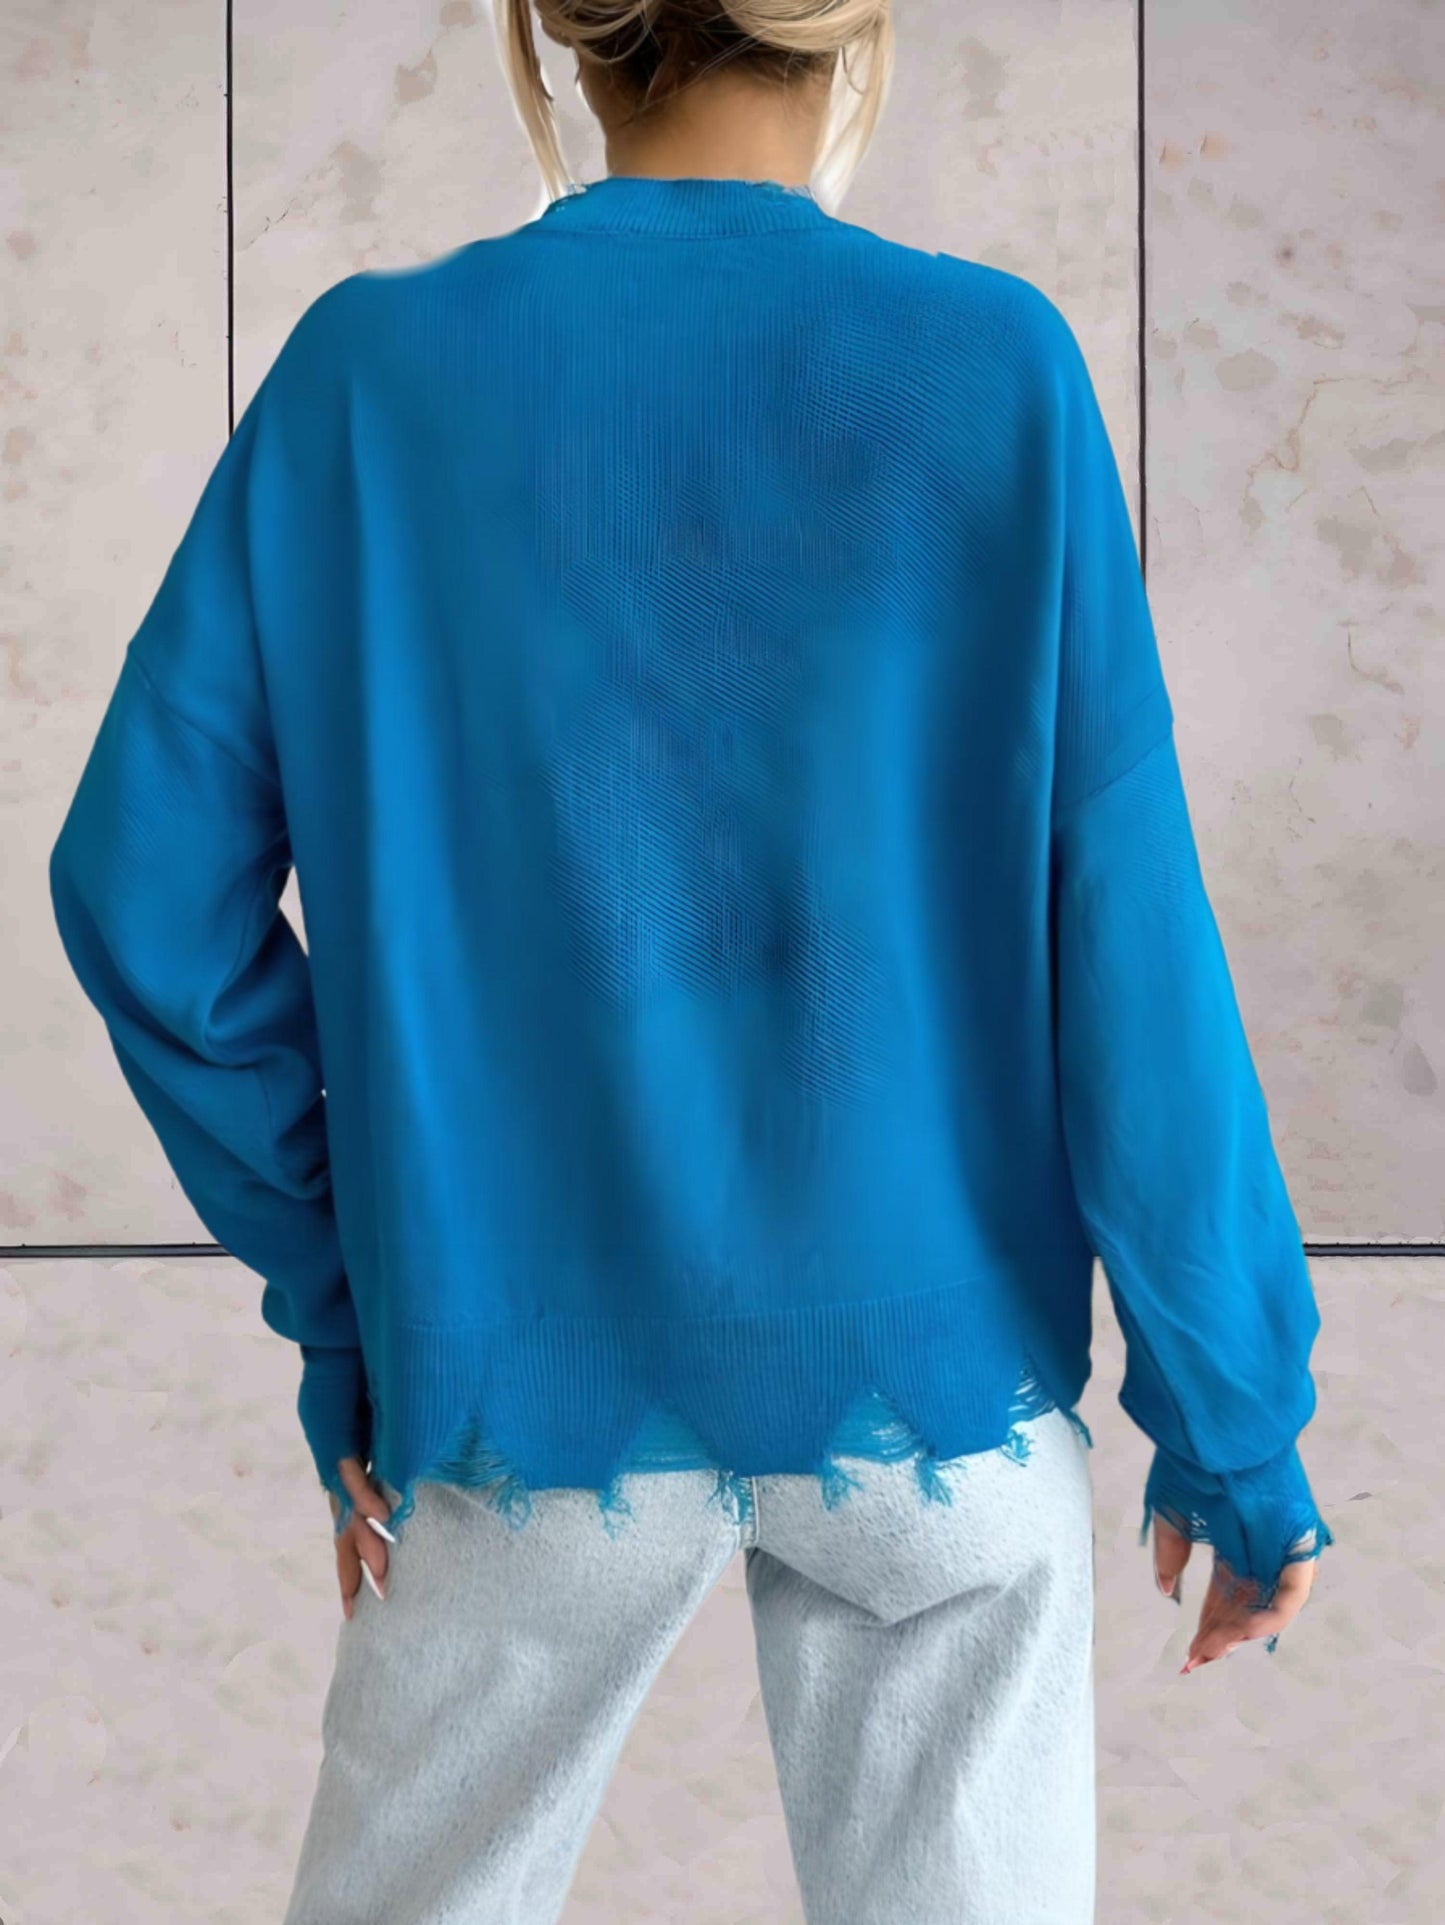 Saskia - comfortabele effen trui met lange mouwen in kleur blauw met ronde hals en gescheurde details aan de onderkant en in de mouwen - Sky-Sense